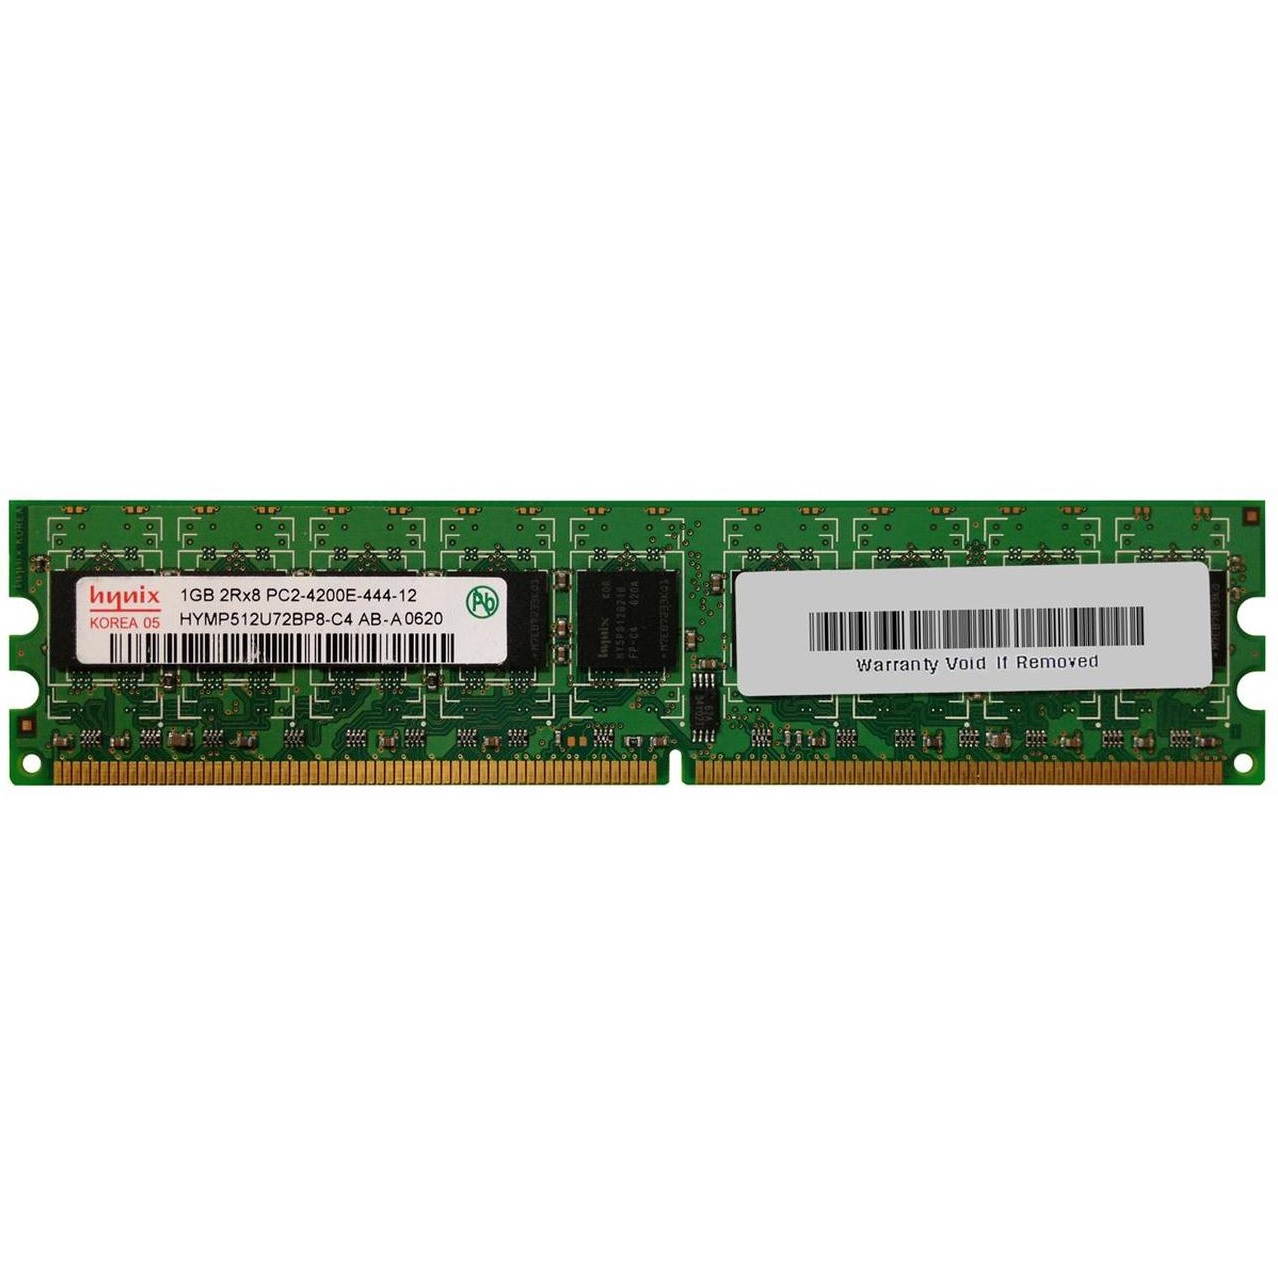 رم دسکتاپ DDR2 تک کاناله 533 مگاهرتز CL4 نانیا مدل HYMP512U72BP8-C4 AB-A ظرفیت 1 گیگابایت